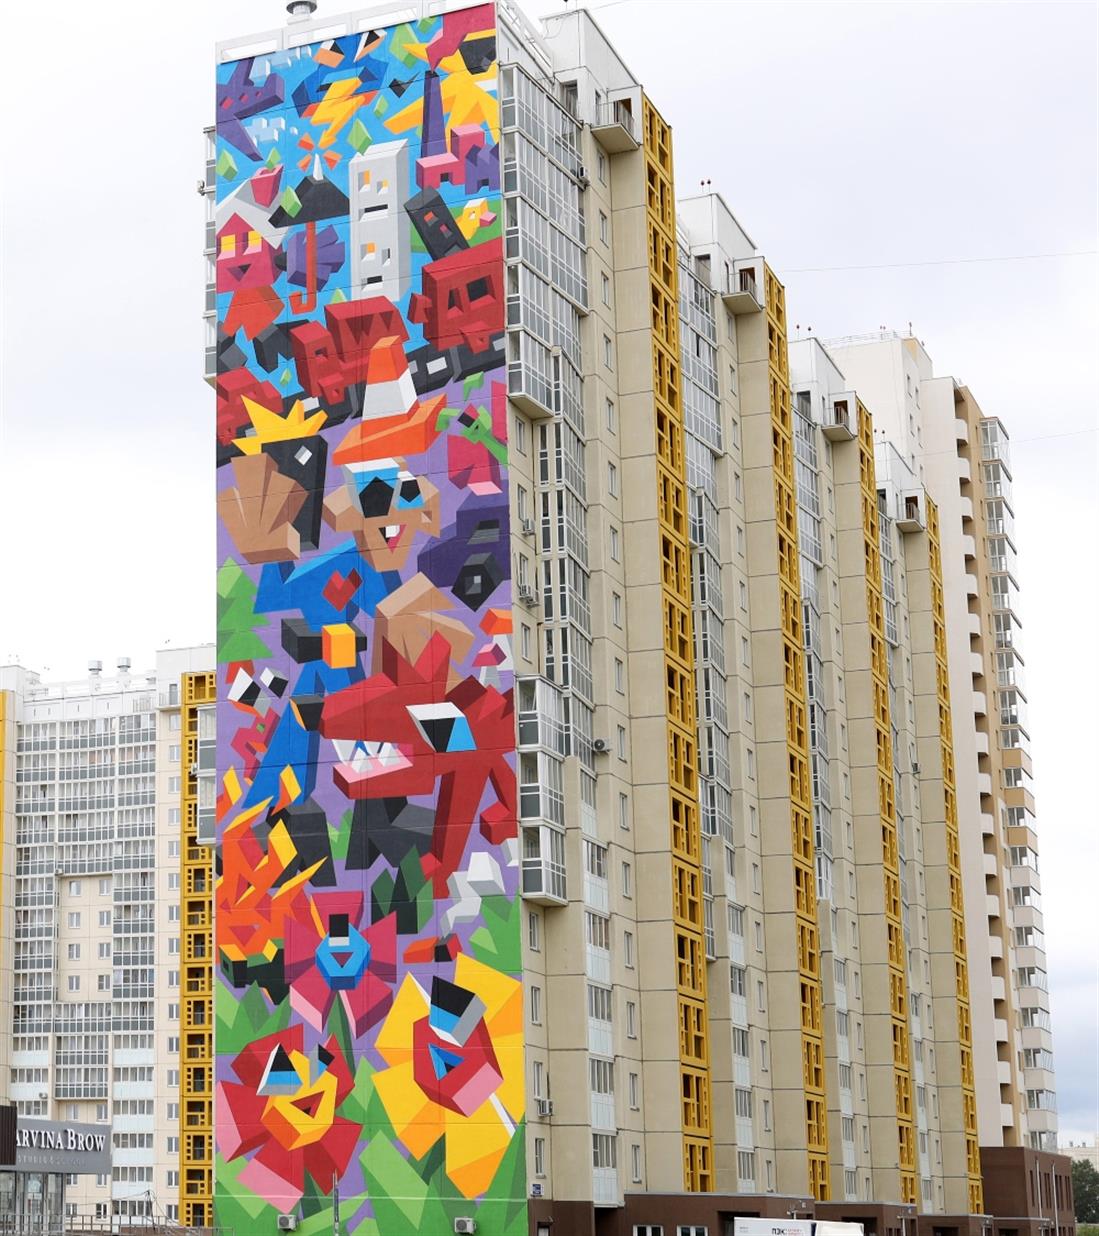 τοιχογραφία - Τσαρένκοφ - Ρωσία